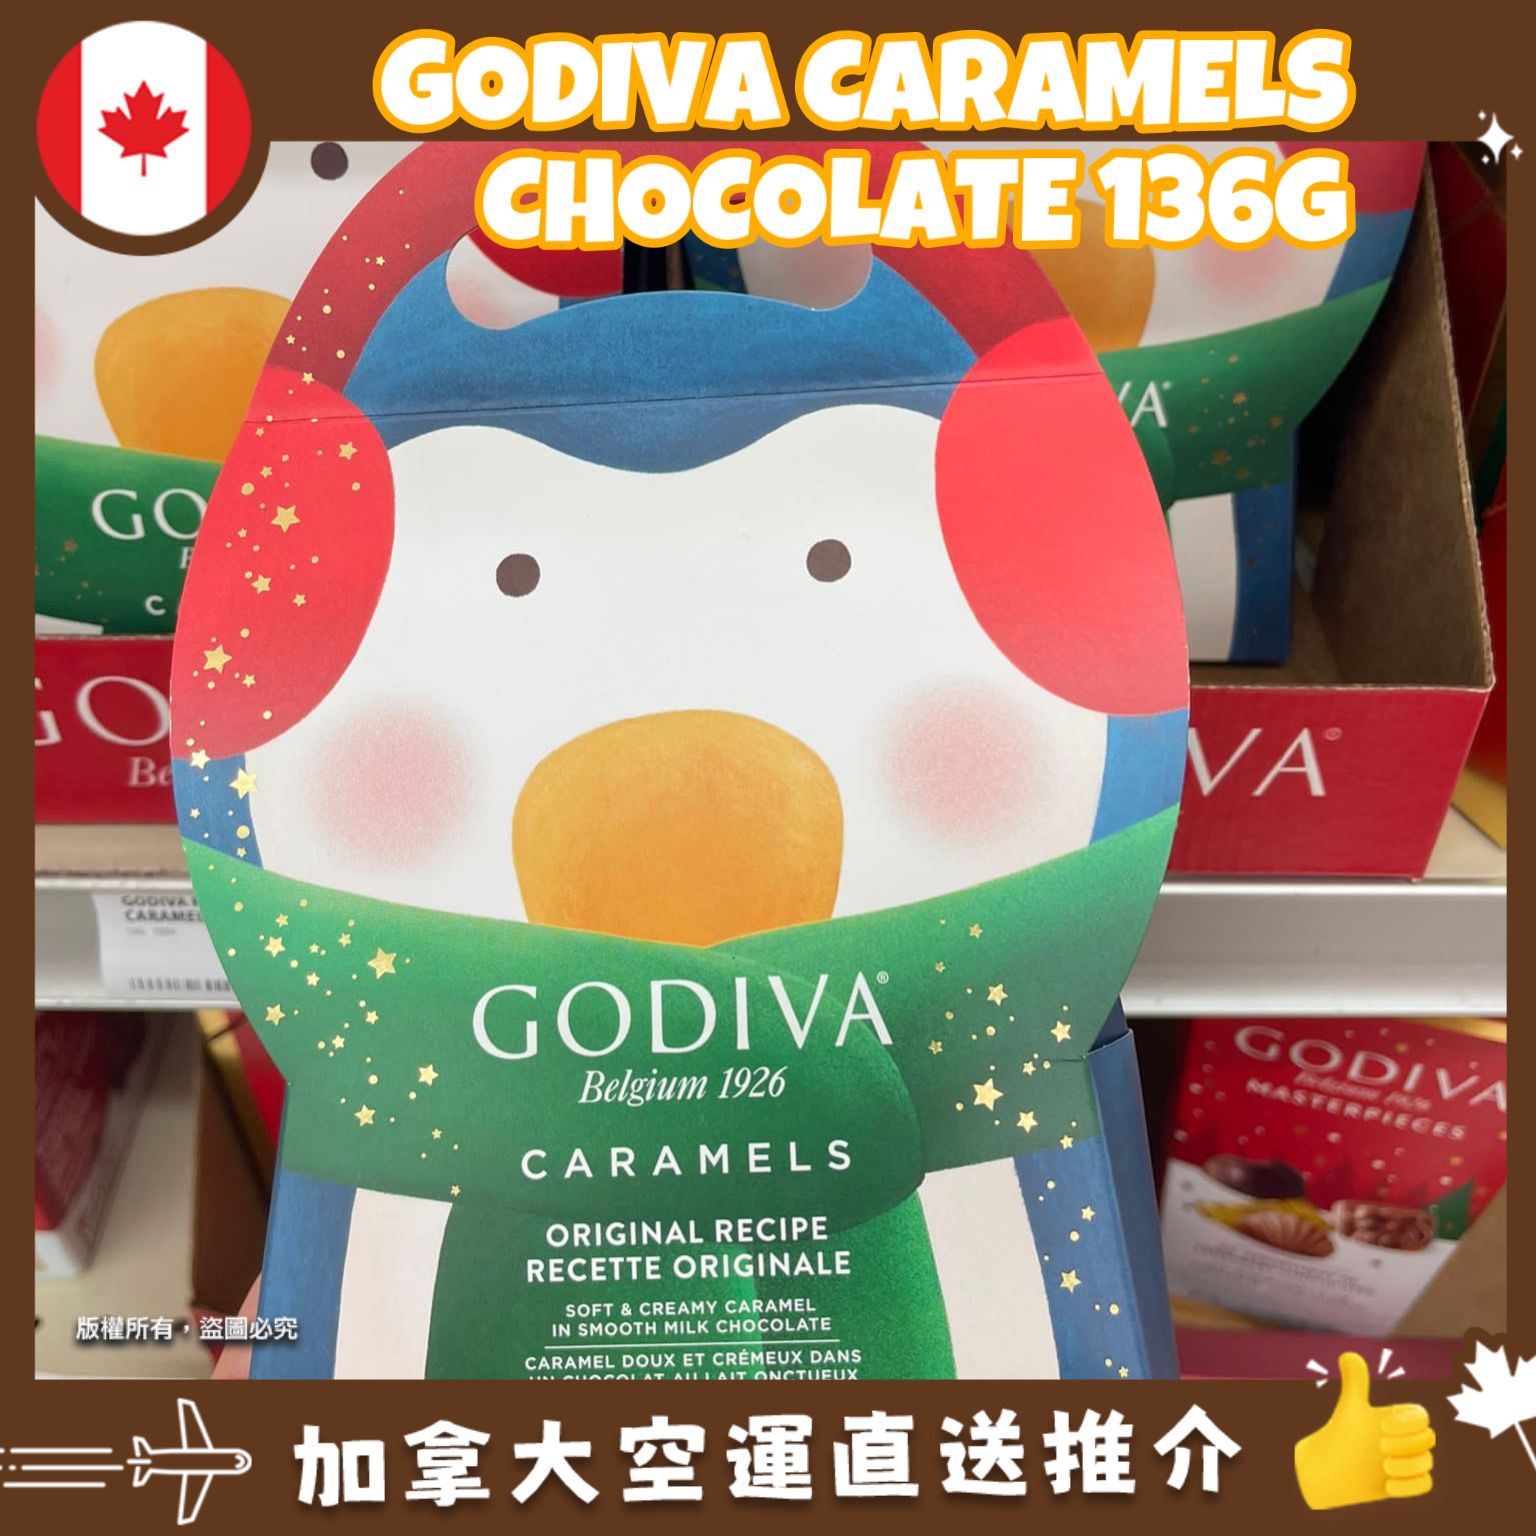 【加拿大空運直送】【加拿大聖誕節限定】 Godiva  Caramel Penguin  焦糖企鵝巧克力禮盒 136g 